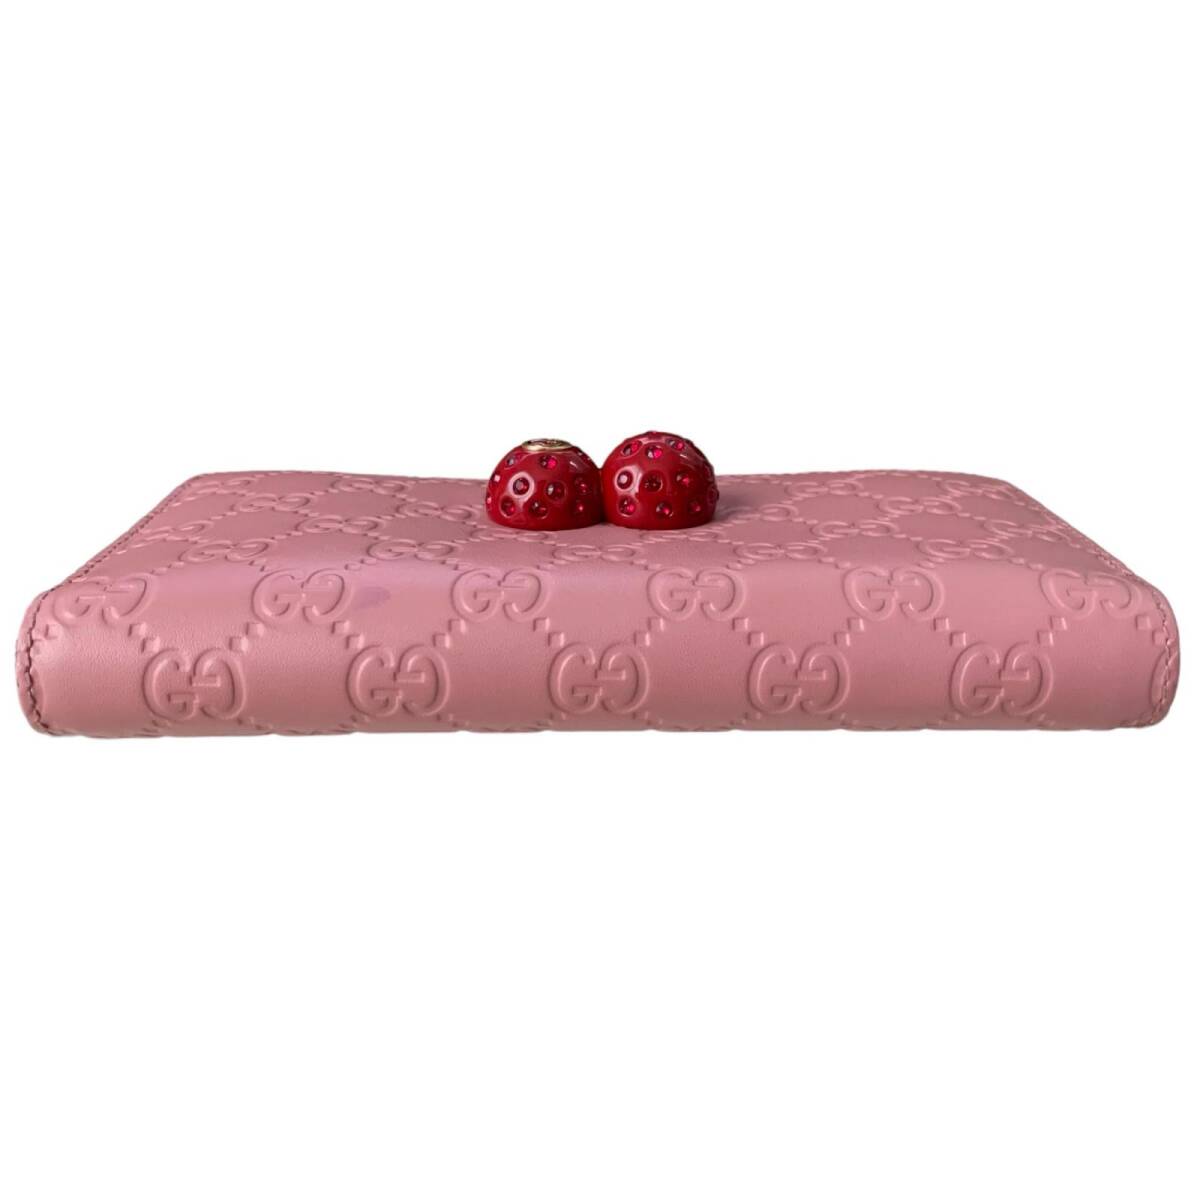  прекрасный товар GUCCI Gucci Gucci кожа Cherry раунд застежка-молния длинный кошелек Япония ограничение розовый серия 476049